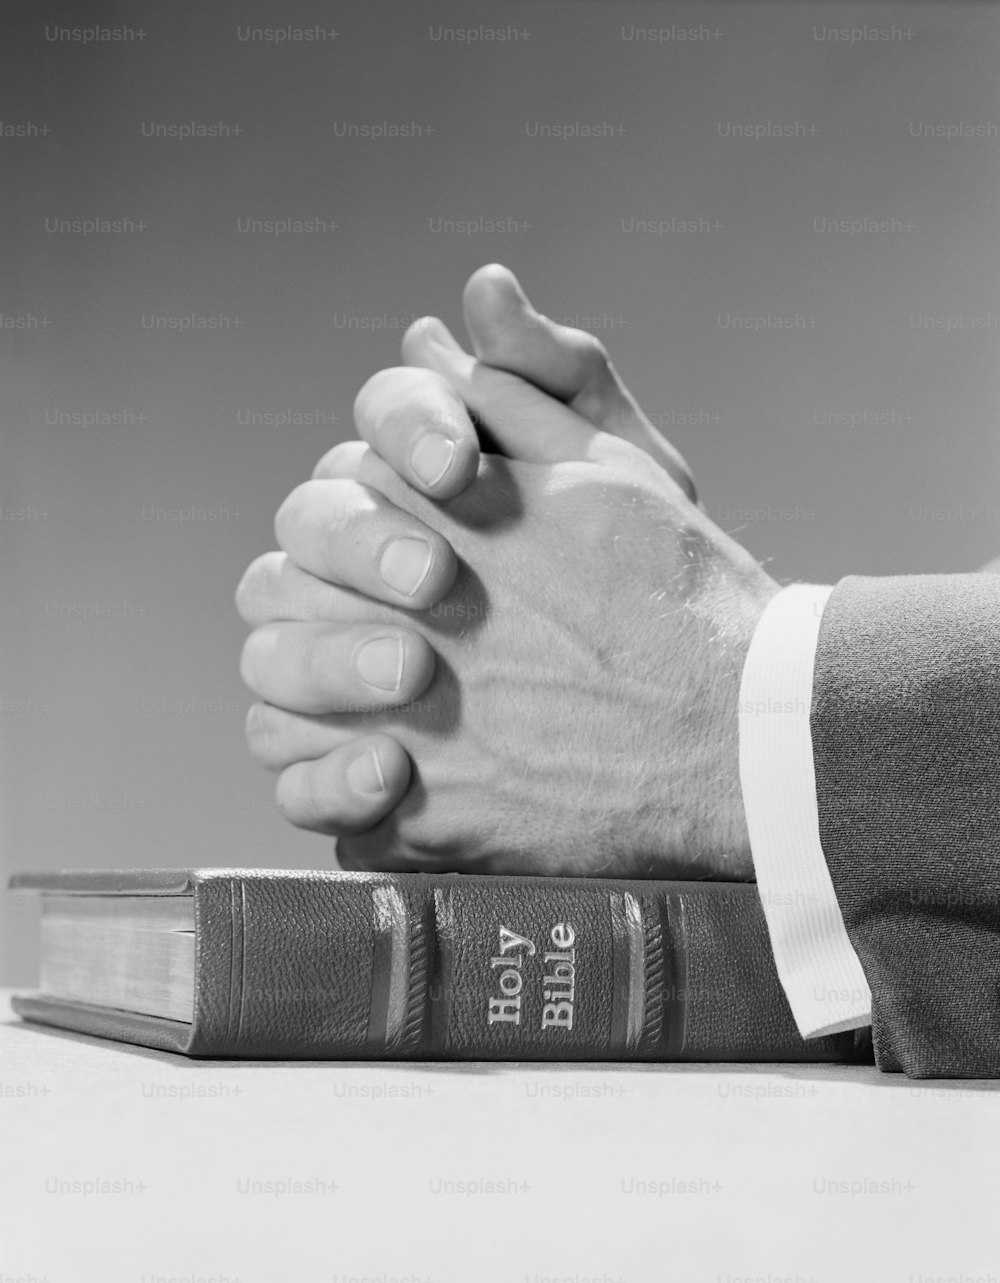 STATI UNITI - 1960 circa: mani dell'uomo appoggiate sopra la sacra bibbia, in preghiera.